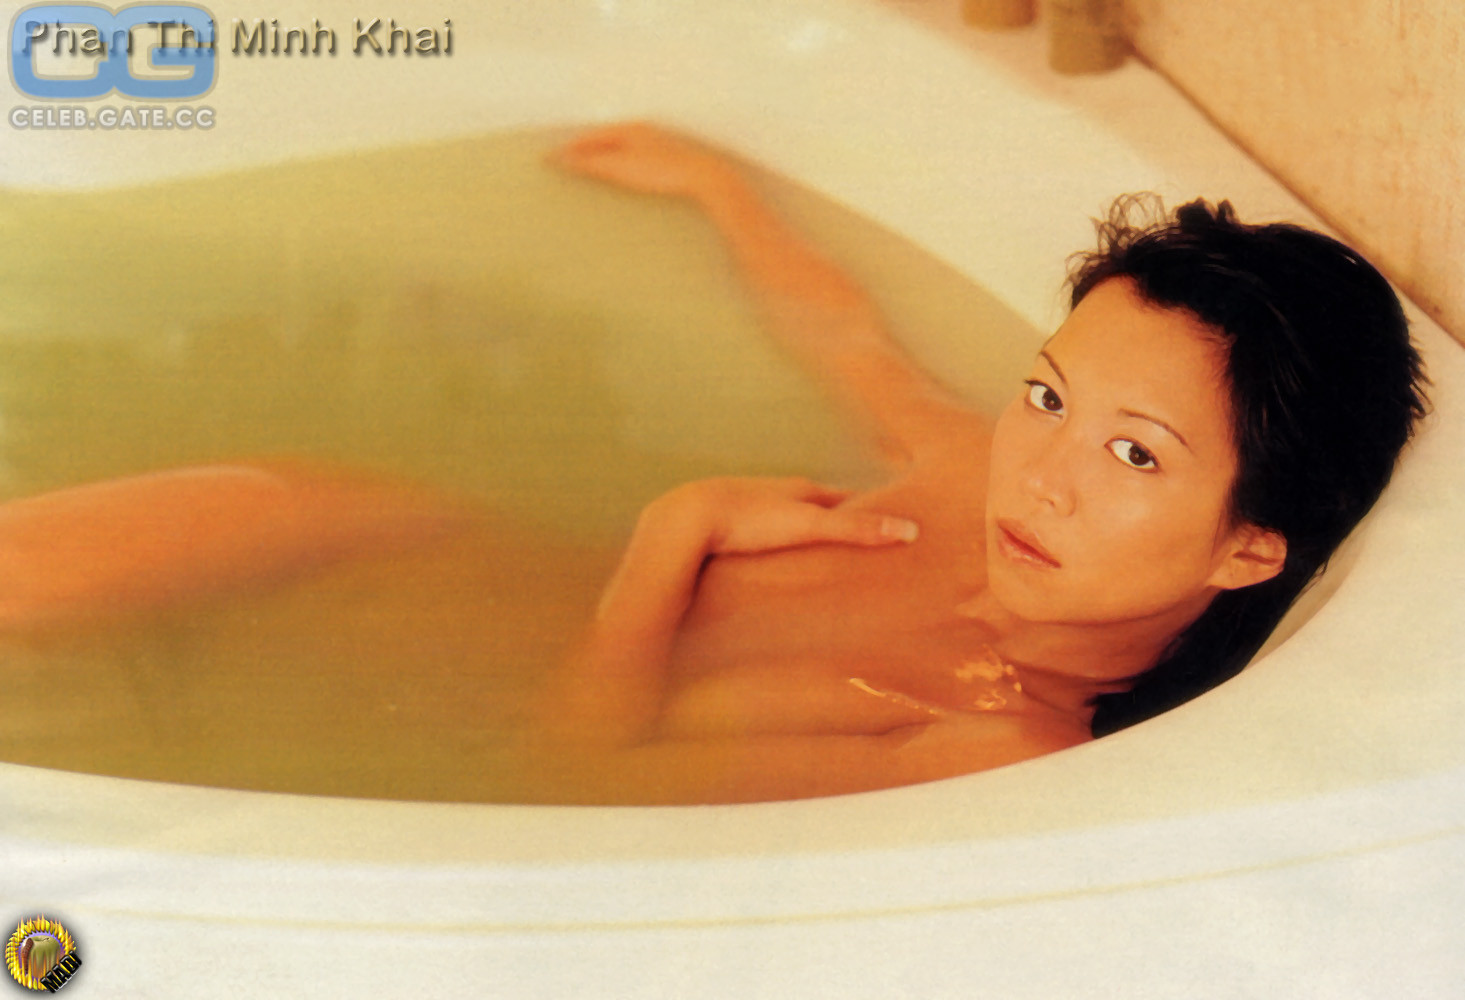 Minh-Khai Phan-Thi naked